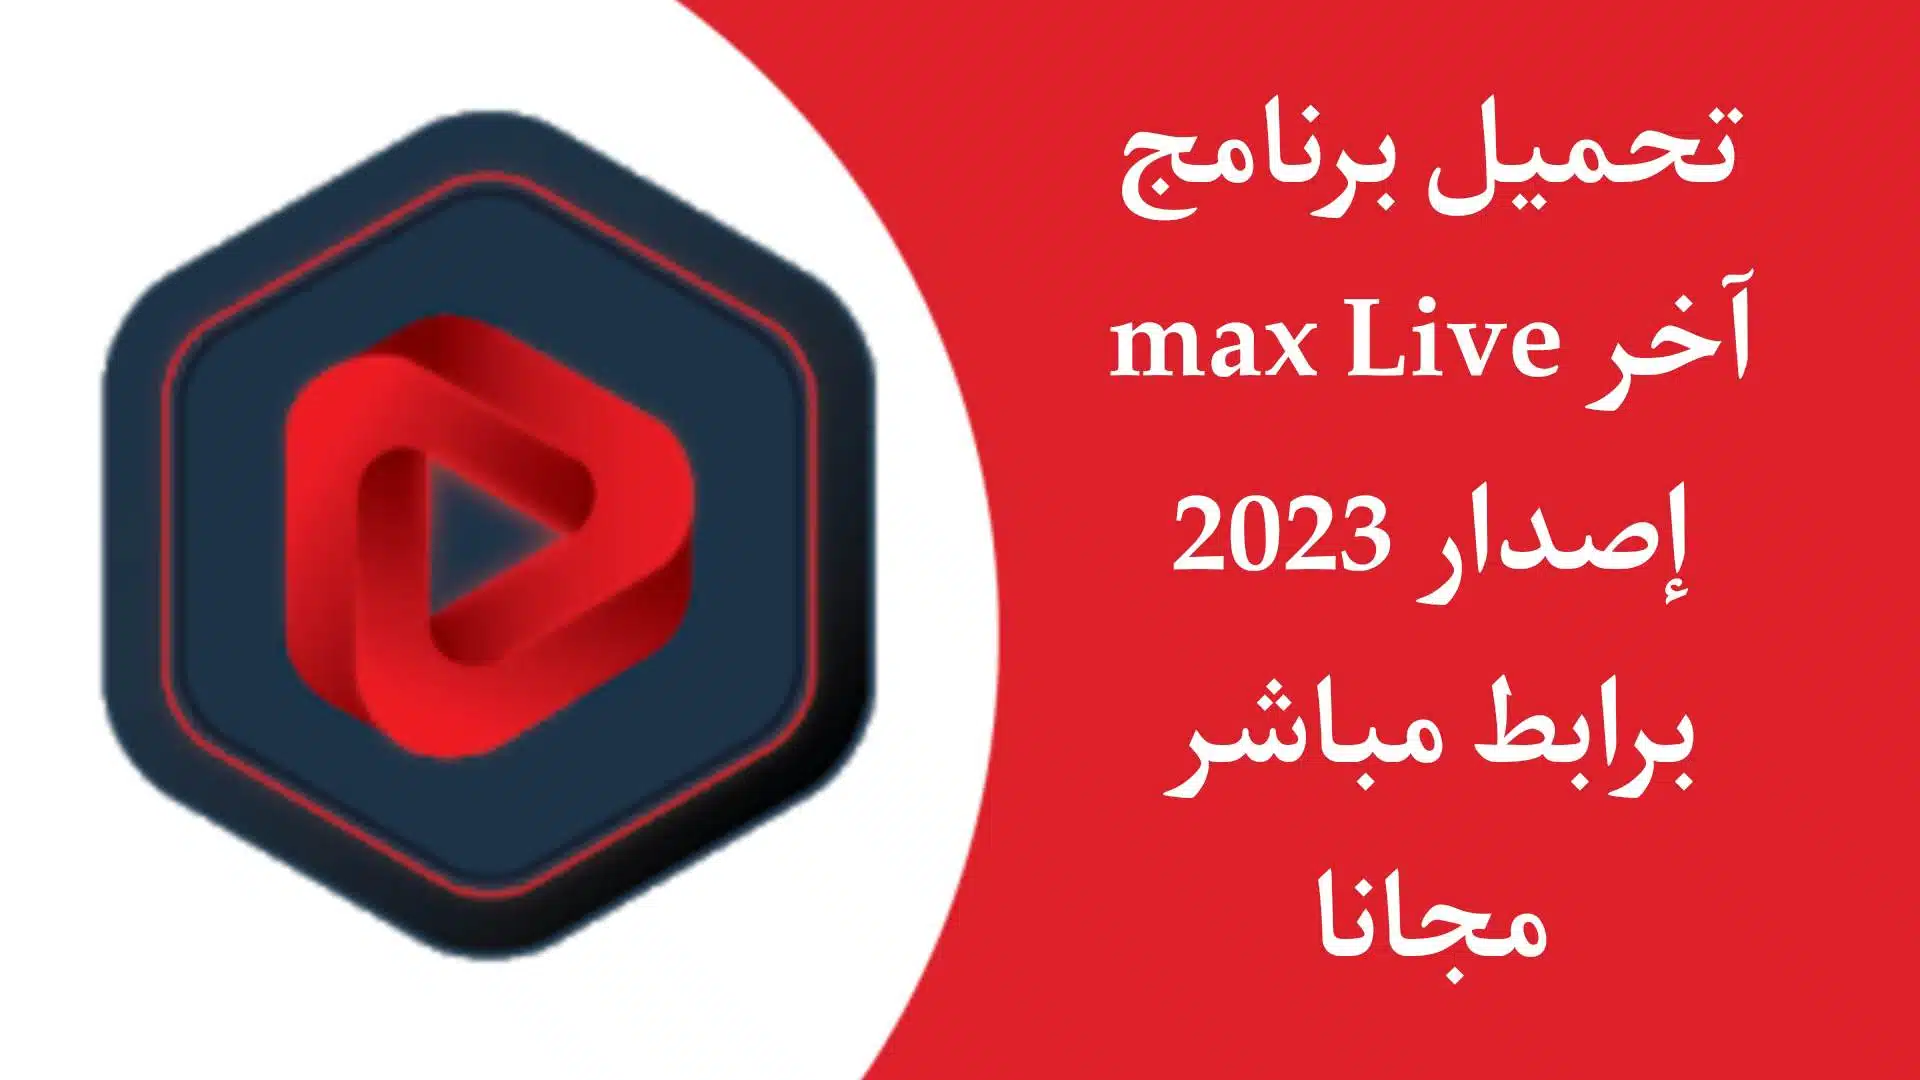 تحميل تطبيق max live لمشاهدة جميع القنوات العربية والاجنبية مجانا بدون تقطيع